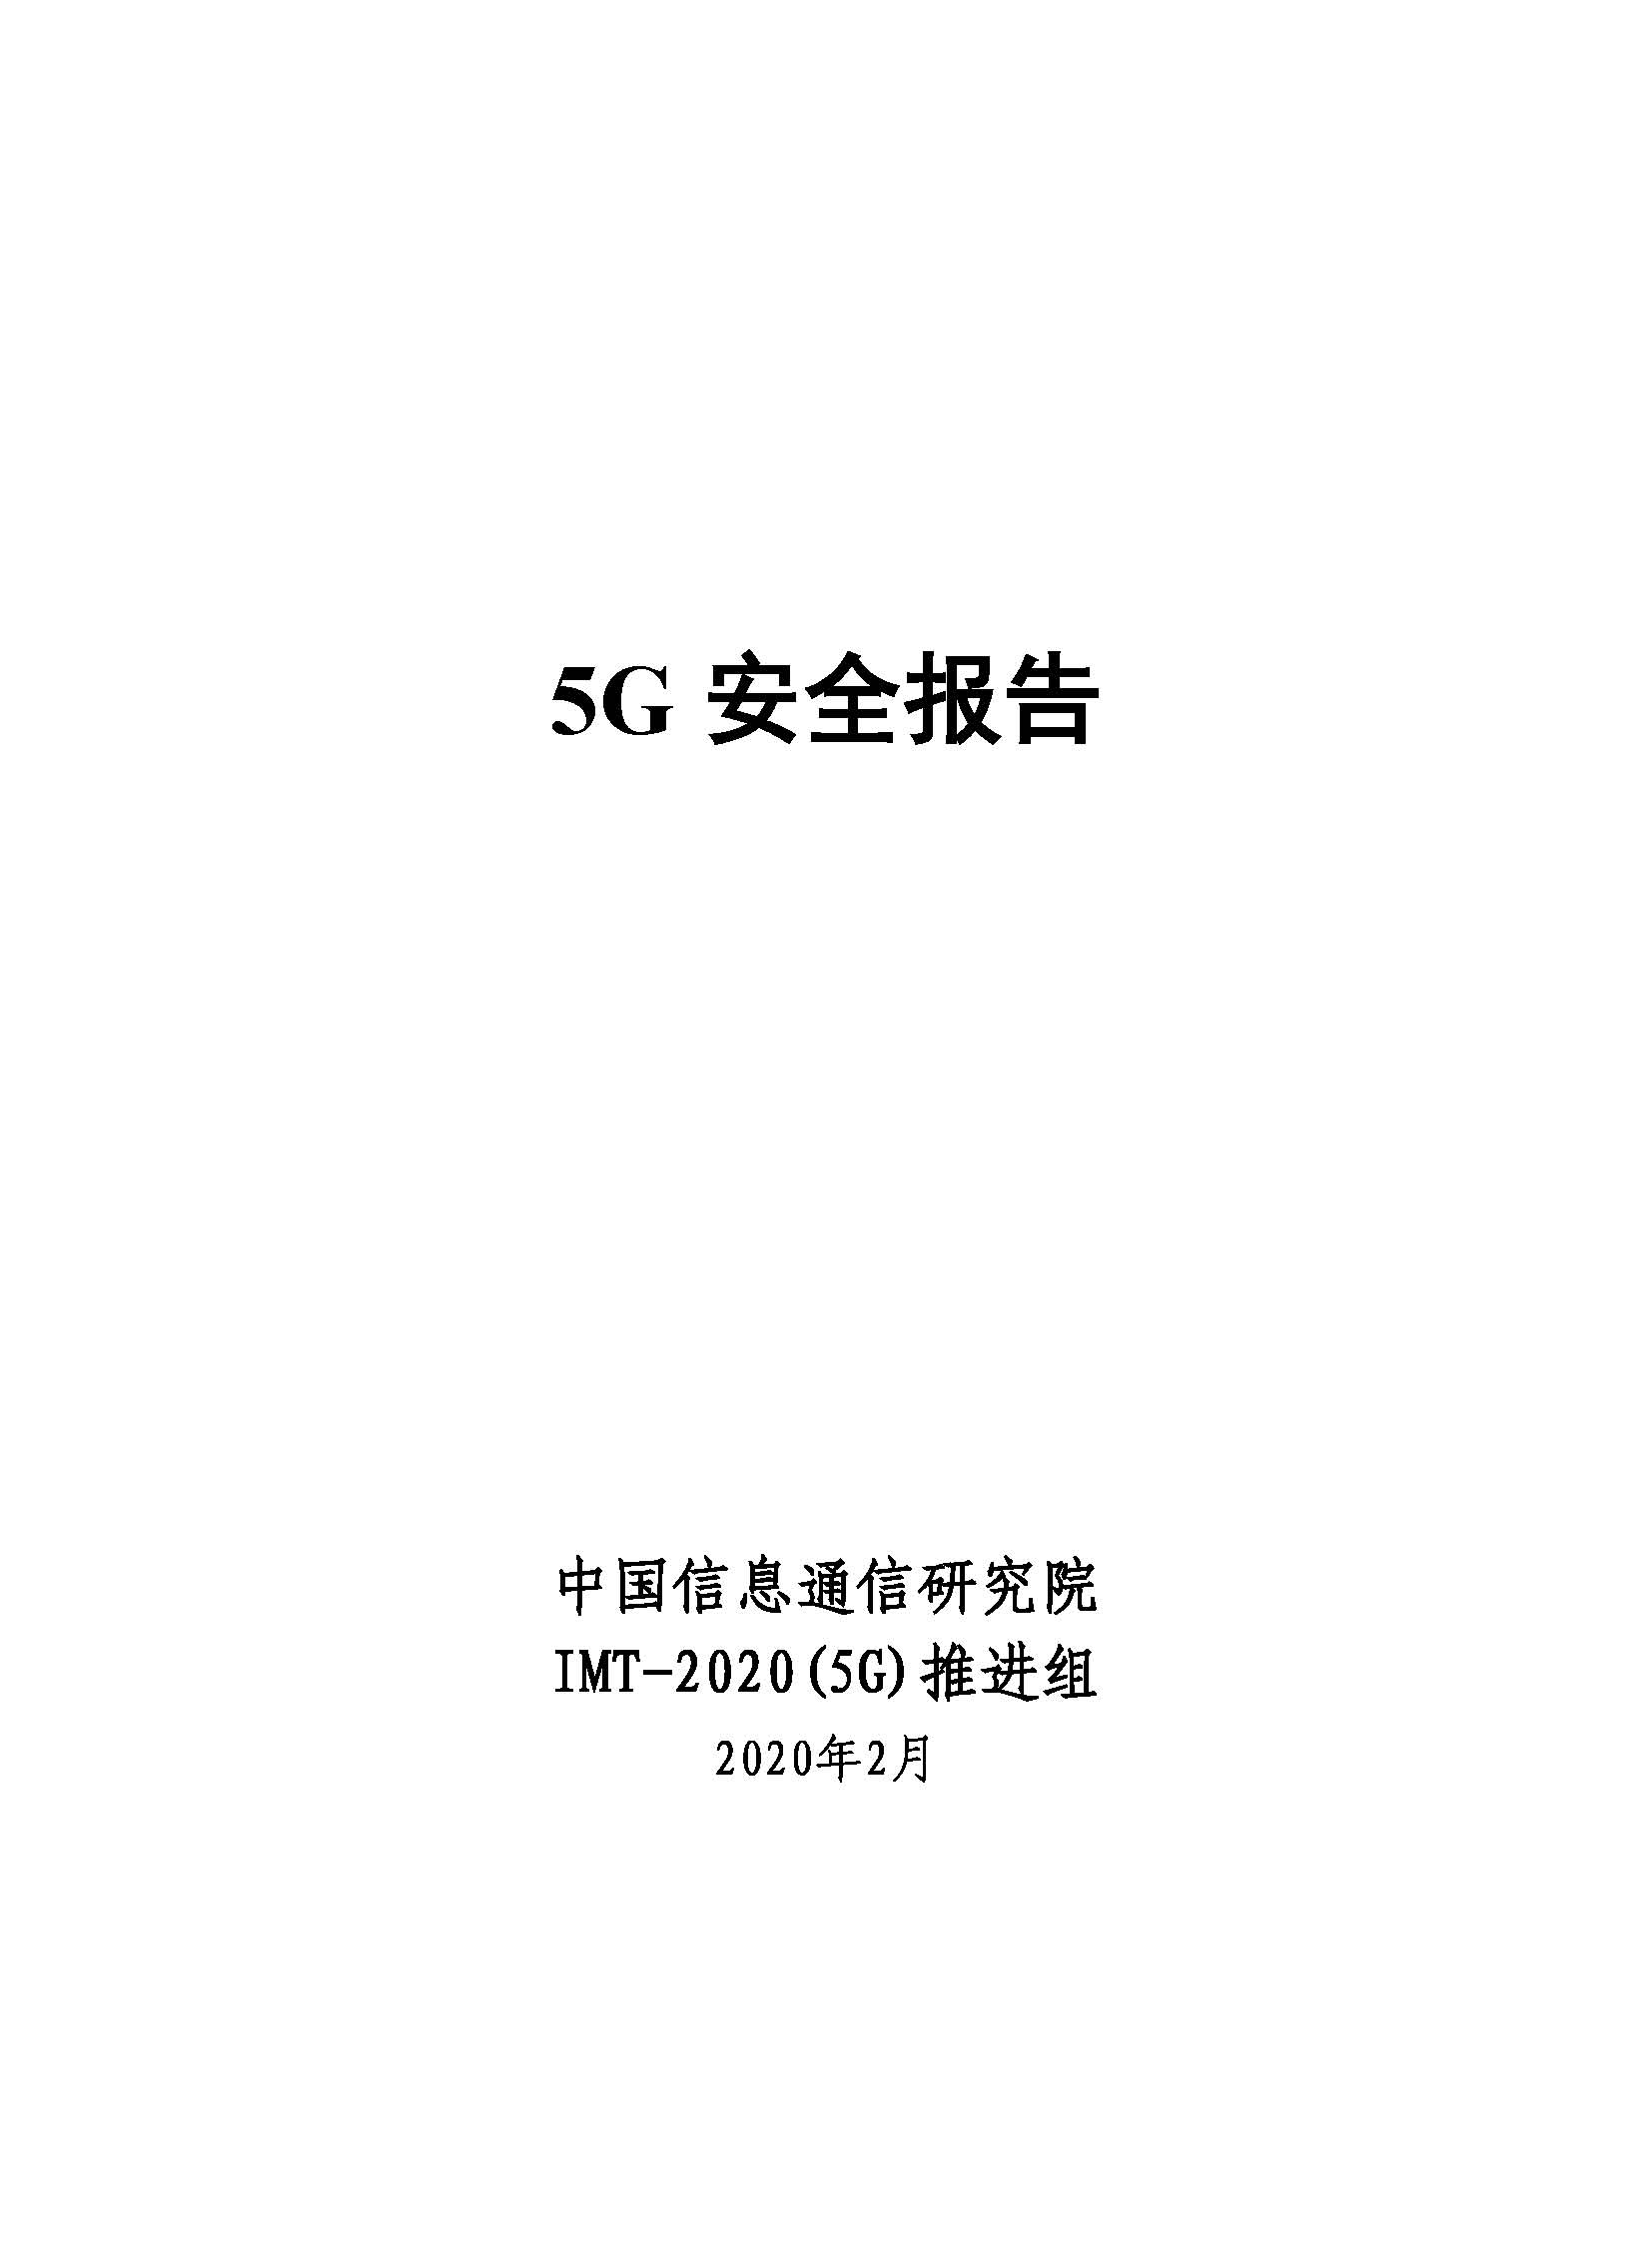 页面提取自－ 5G安全报告(2020).jpg